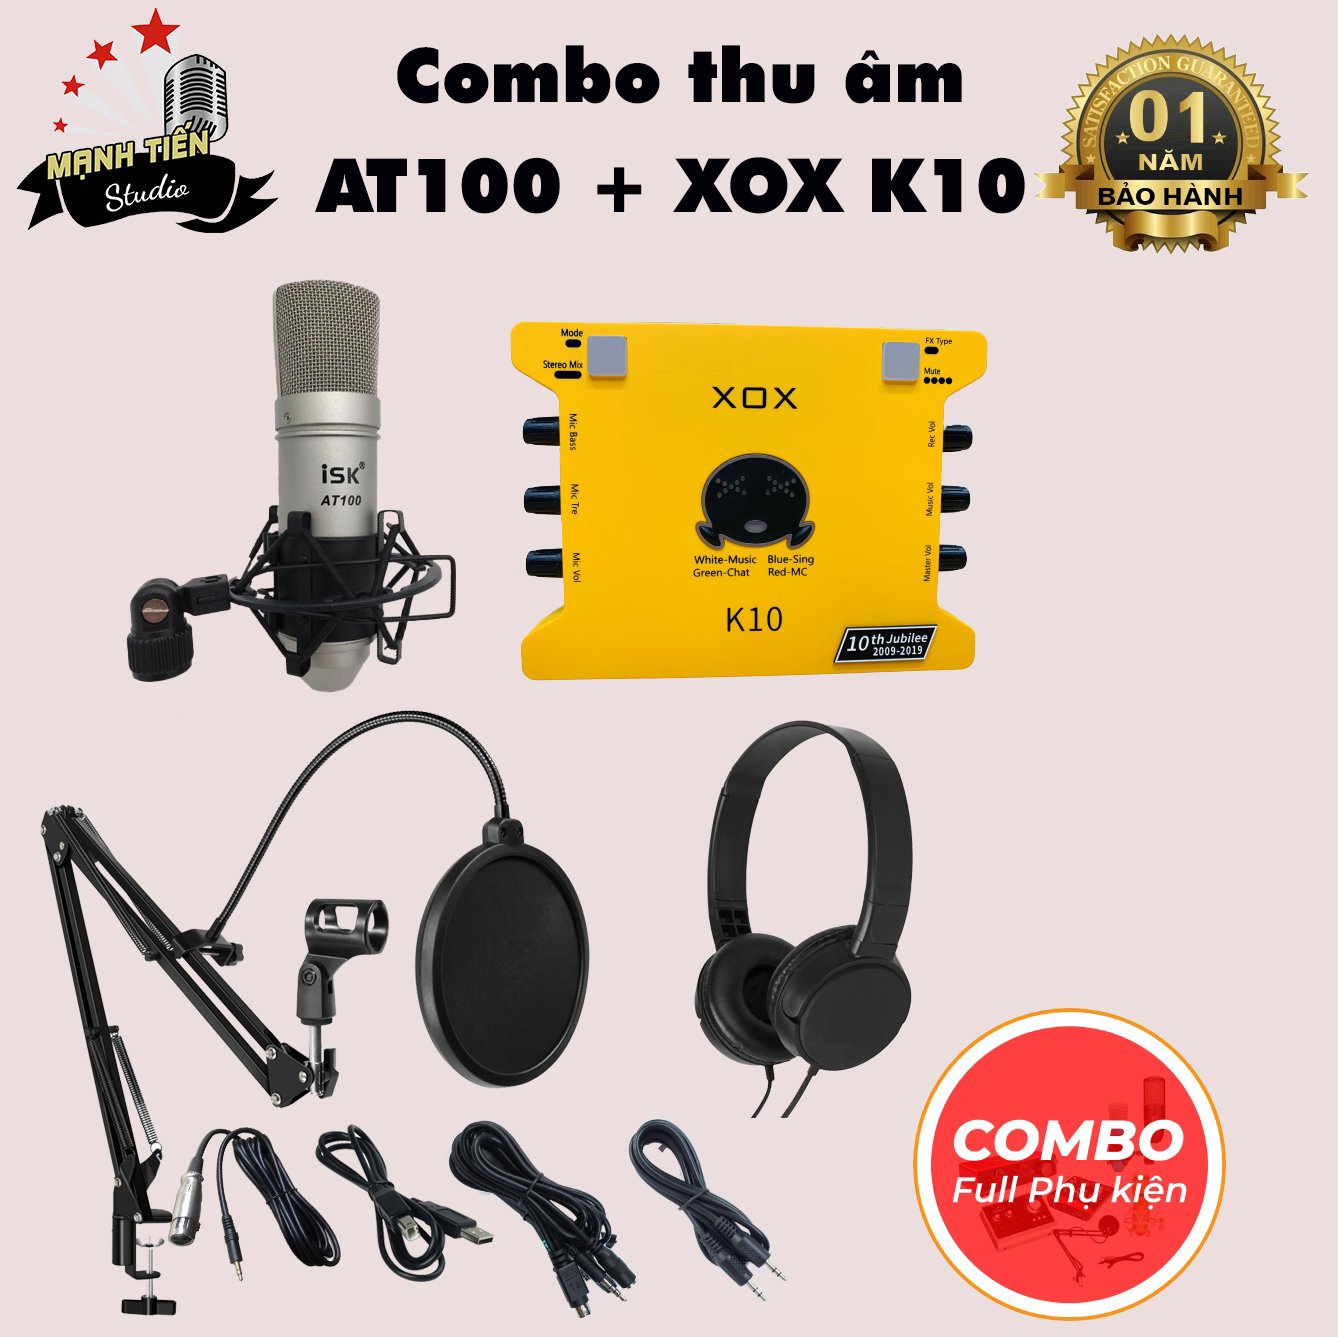 Bộ Combo livestream ISK AT100 + Sound card XOX K10 jubilee - Kèm full phụ kiện kẹp micro, màng lọc, tai nghe chụp tai - Thu âm, livestream, karaoke online chuyên nghiệp trên cả điện thoại lẫn máy tính - Hàng chính hãng